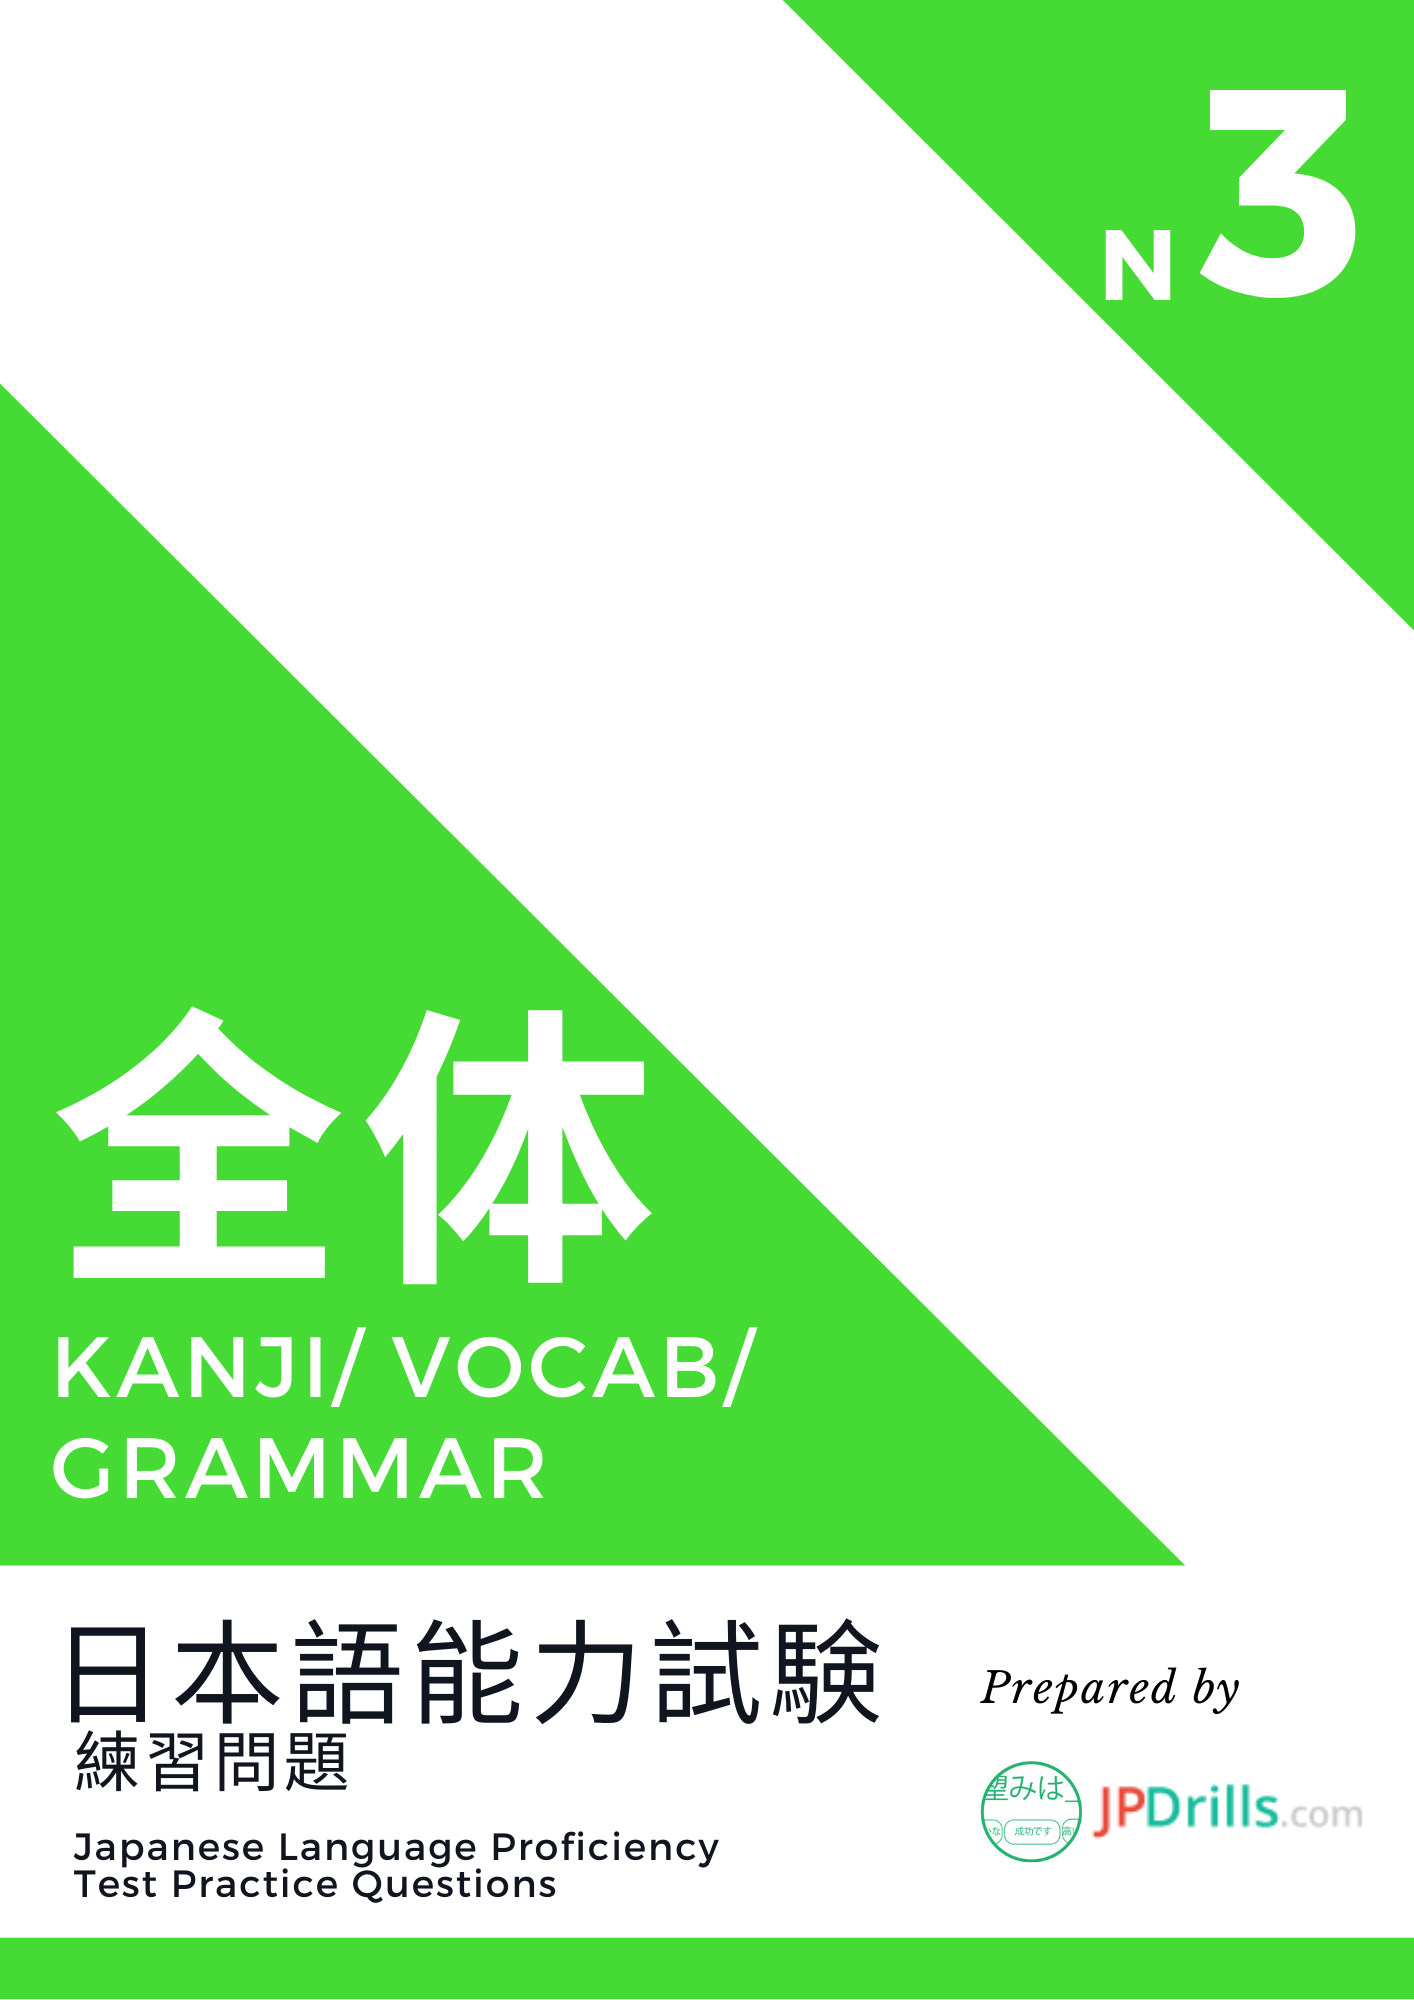 JLPT N3 Kanji/ Vocabulary/ Grammar quiz logo